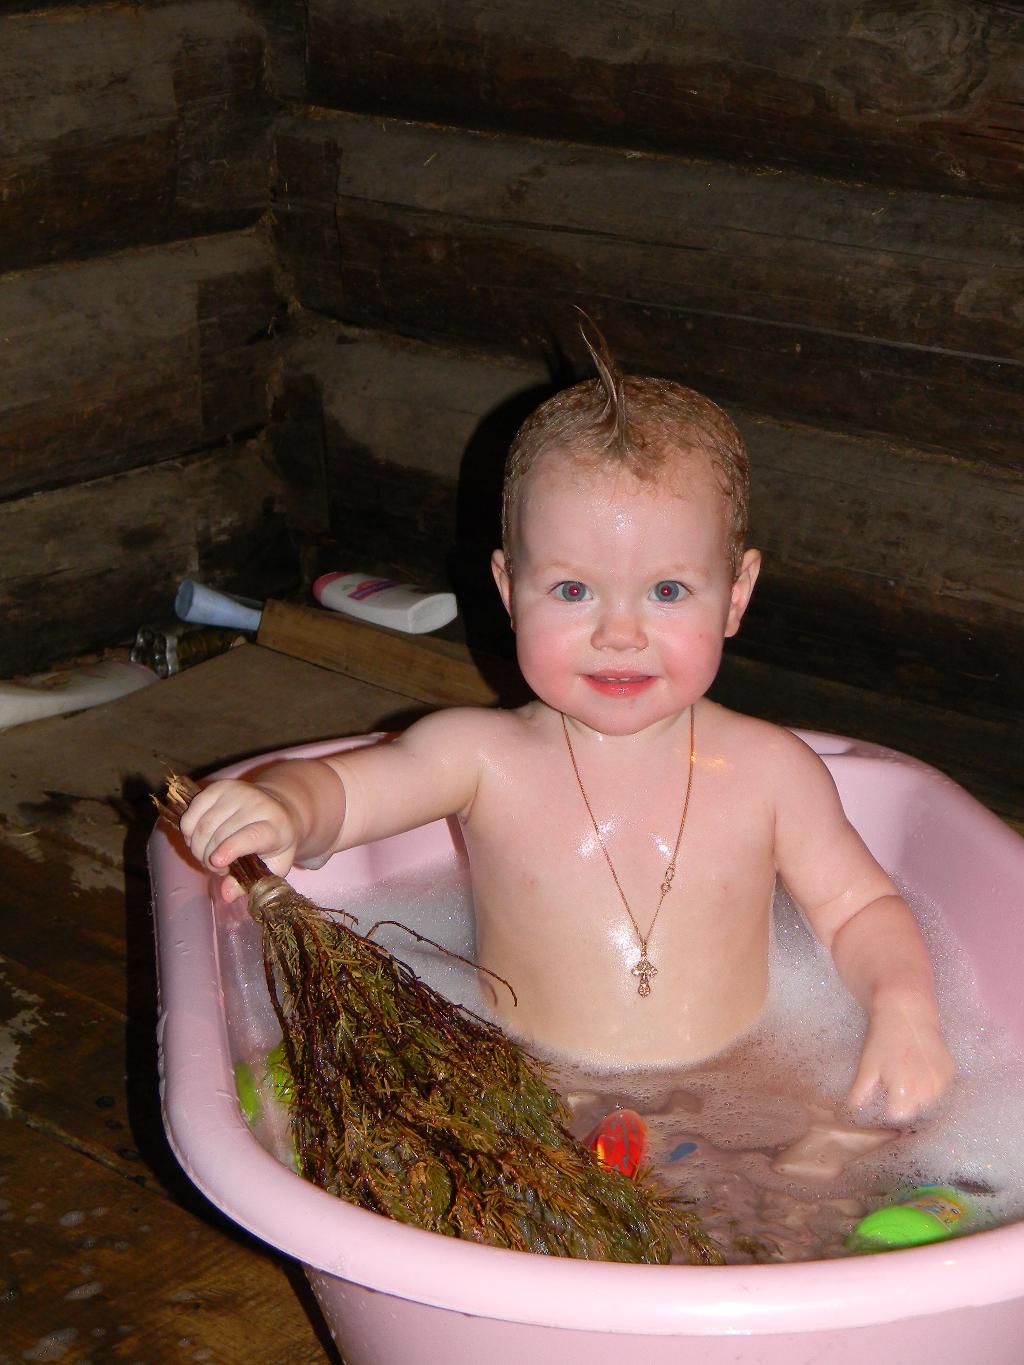 как купаться в бани голыми с детьми фото 33